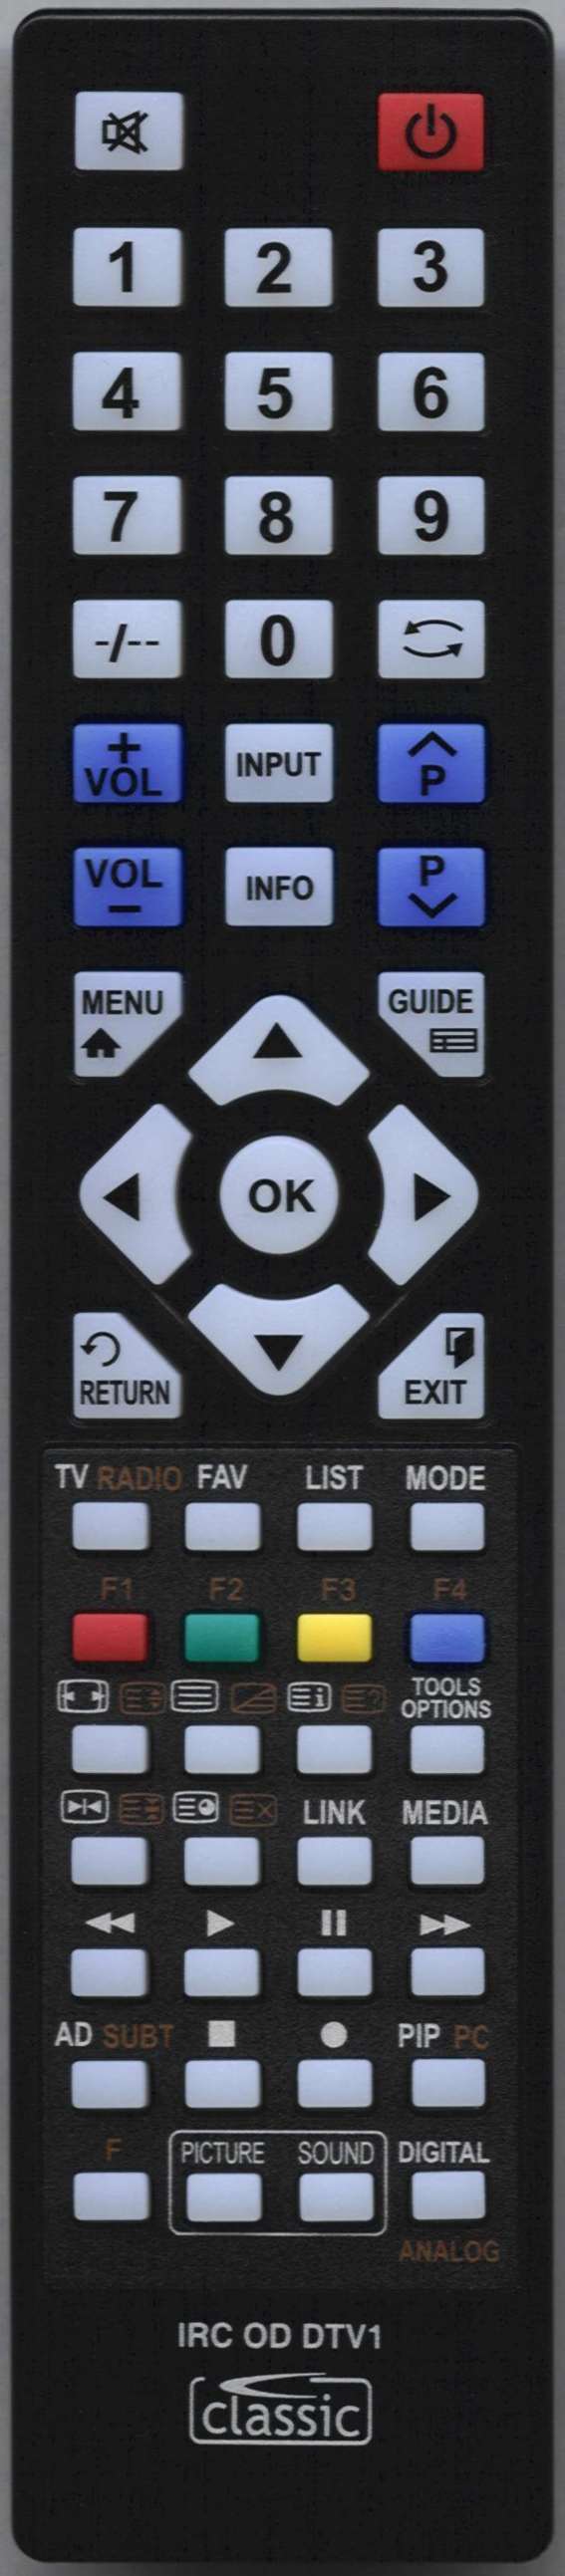 Orion 23228546 Remote Control Alternative